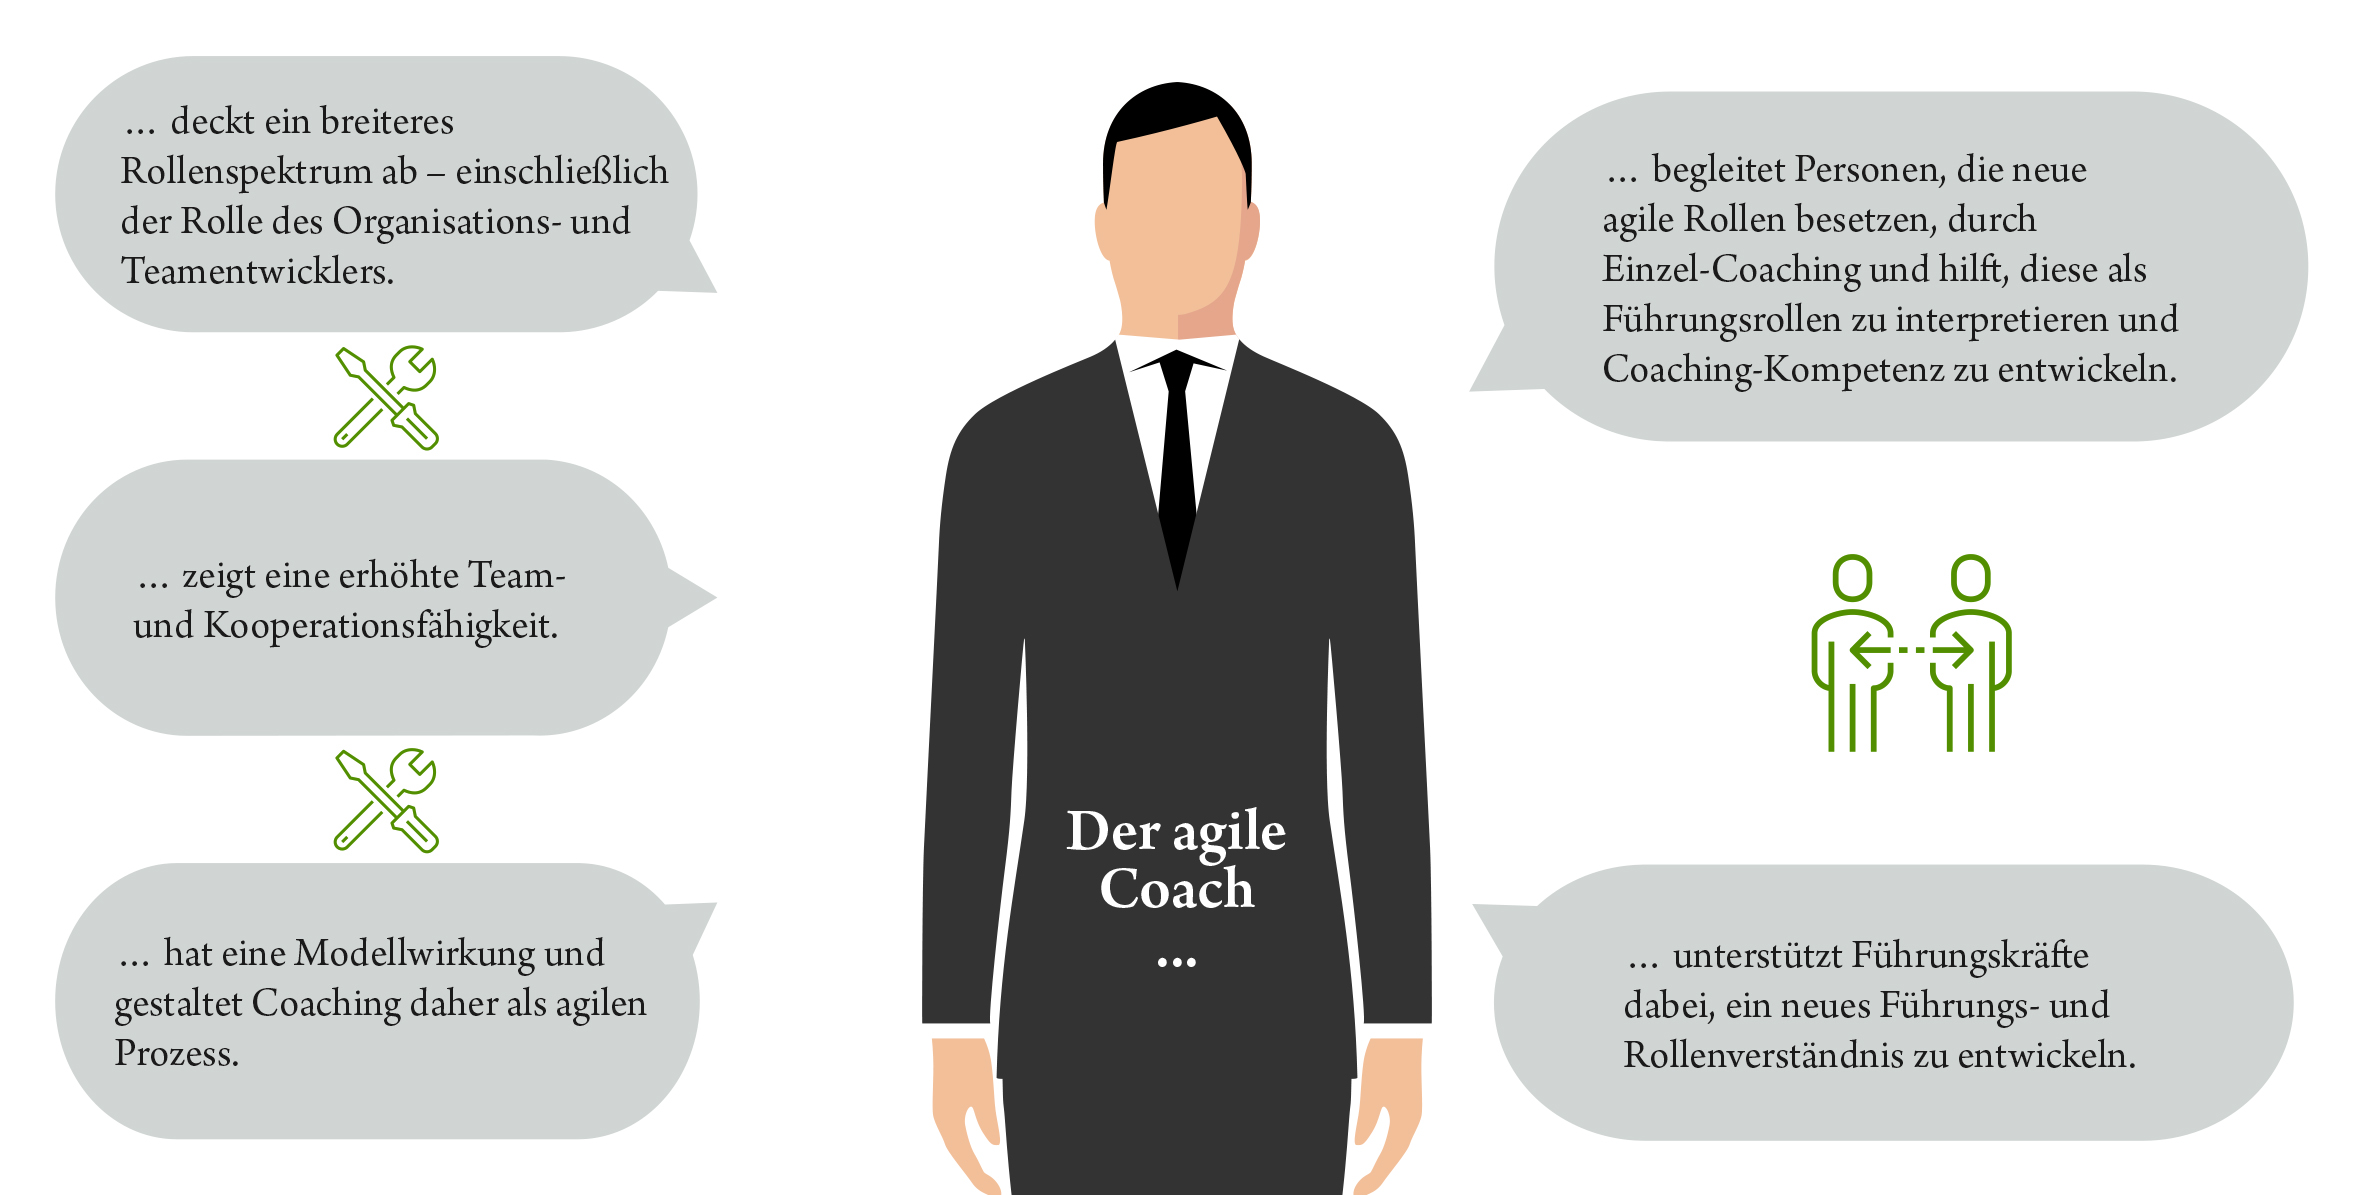 Anforderungen und Funktionen des agilen Coachs